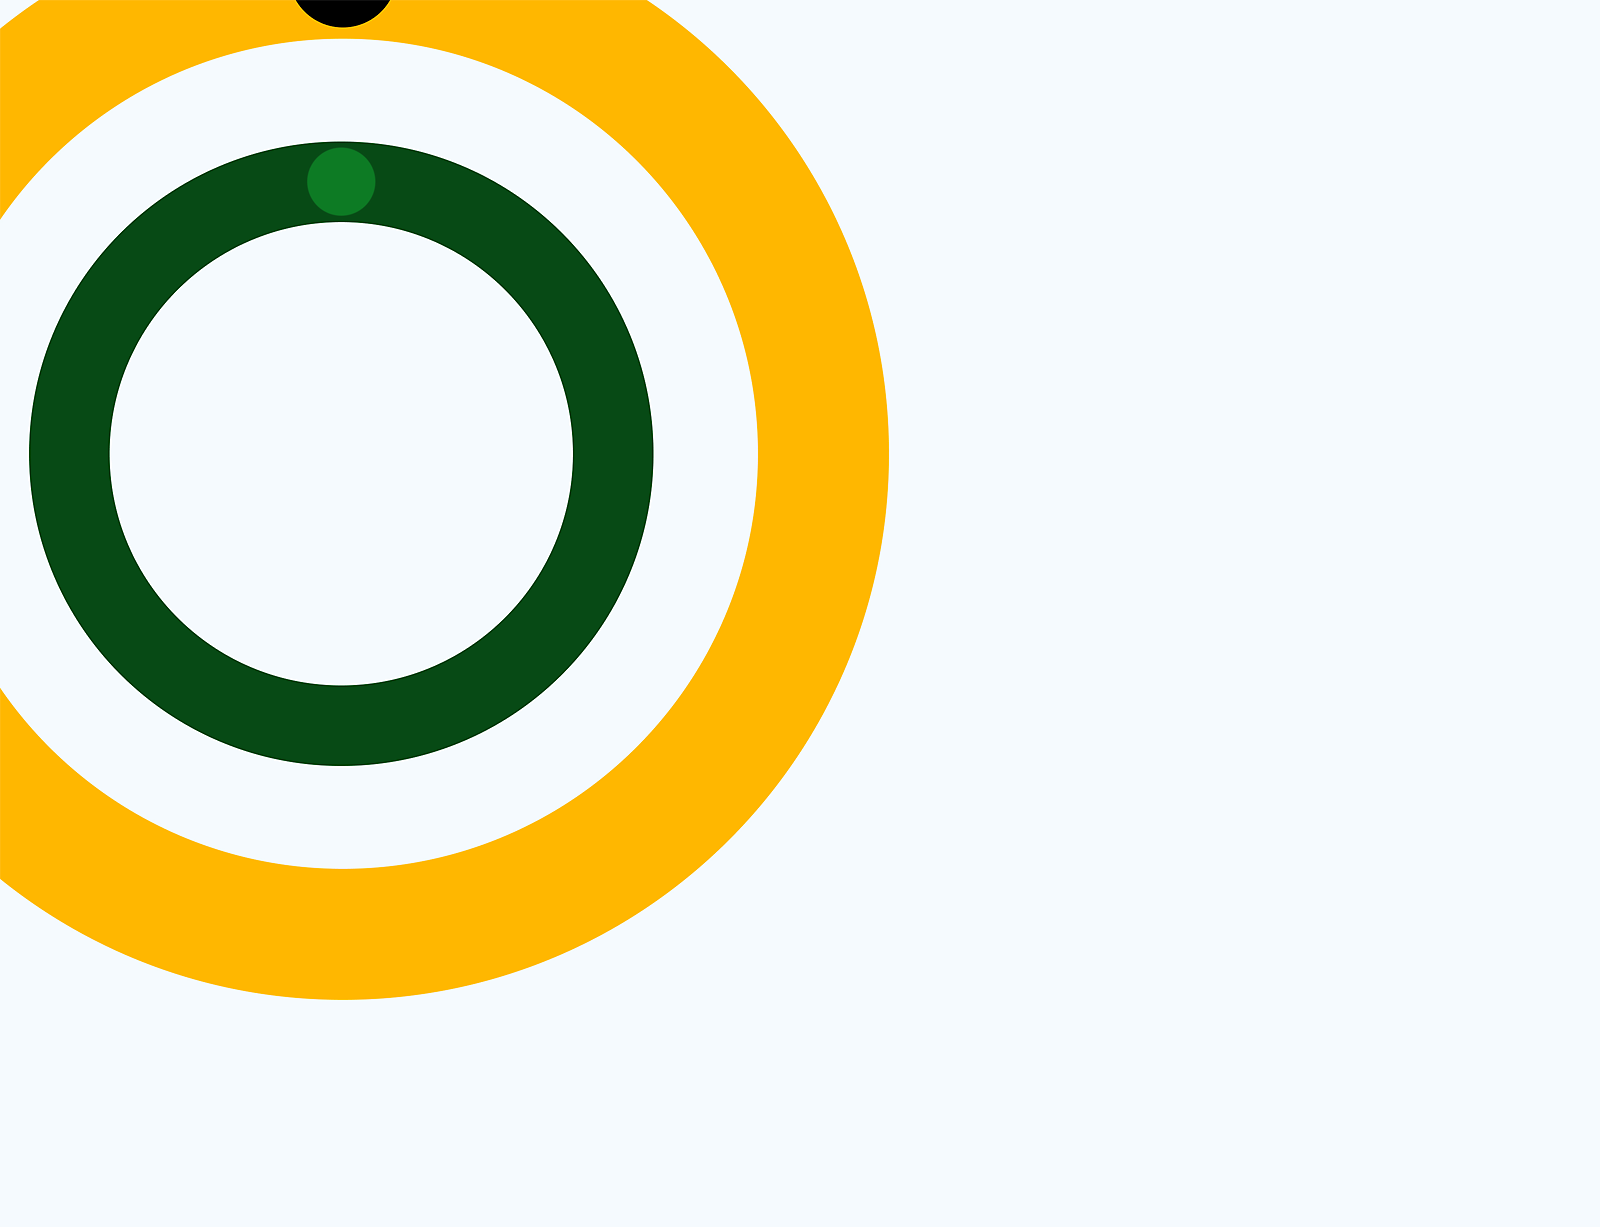 Element grafic abstract cu cercuri concentrice verzi, galbene și albe pe fundal gri.